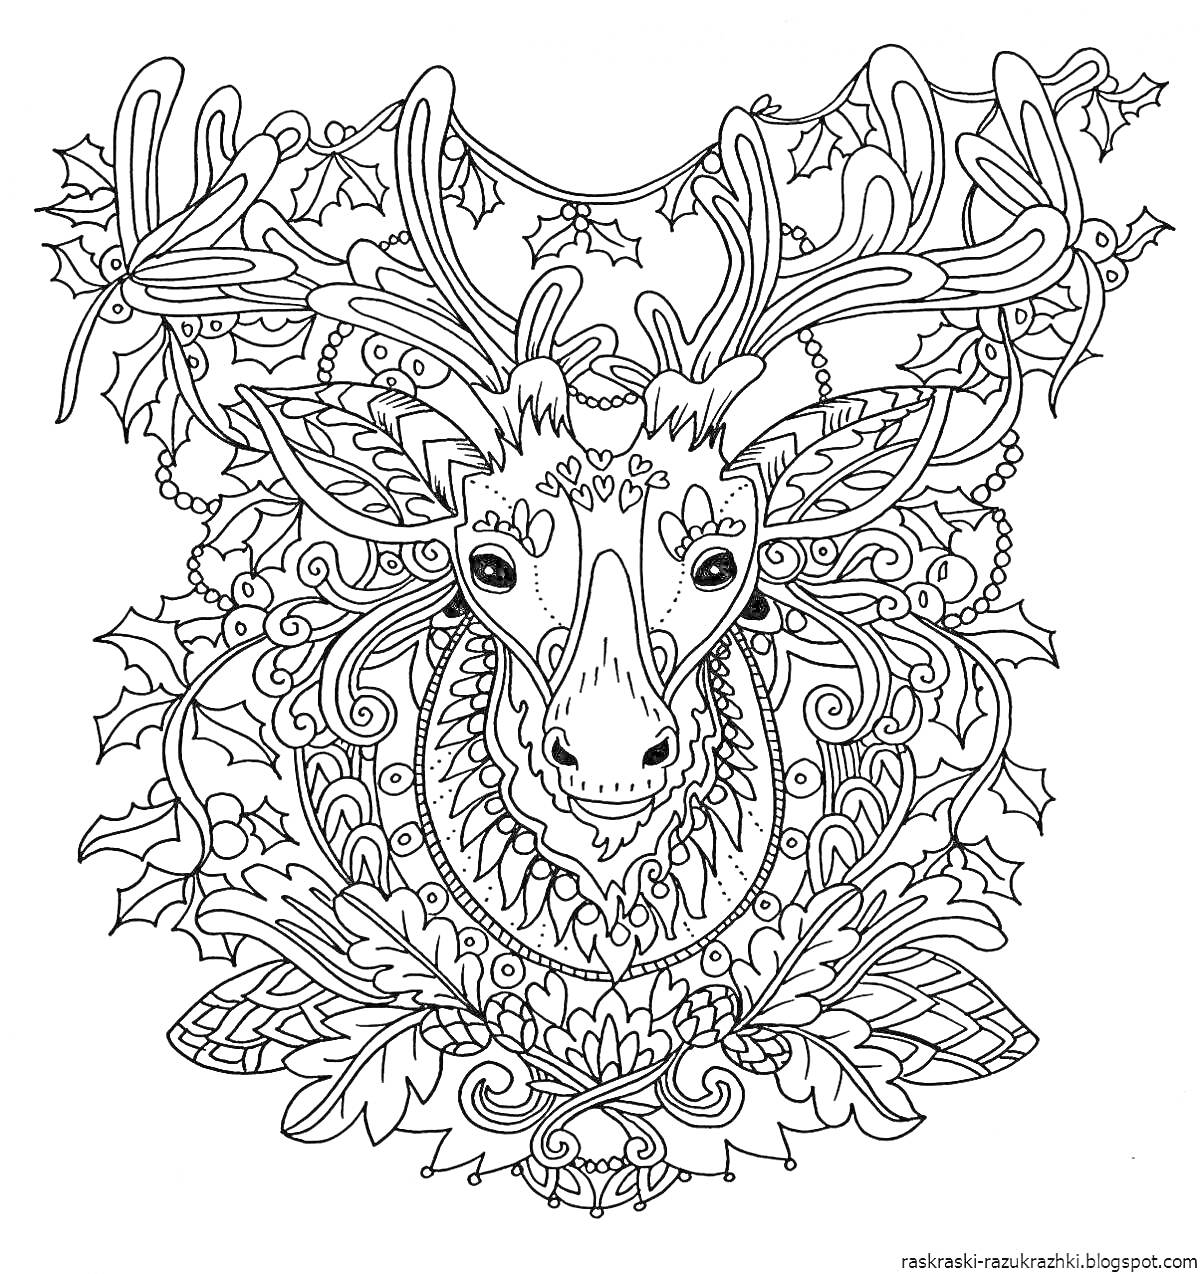 Раскраска олень с орнаментом, окружённый листьями и ветвями